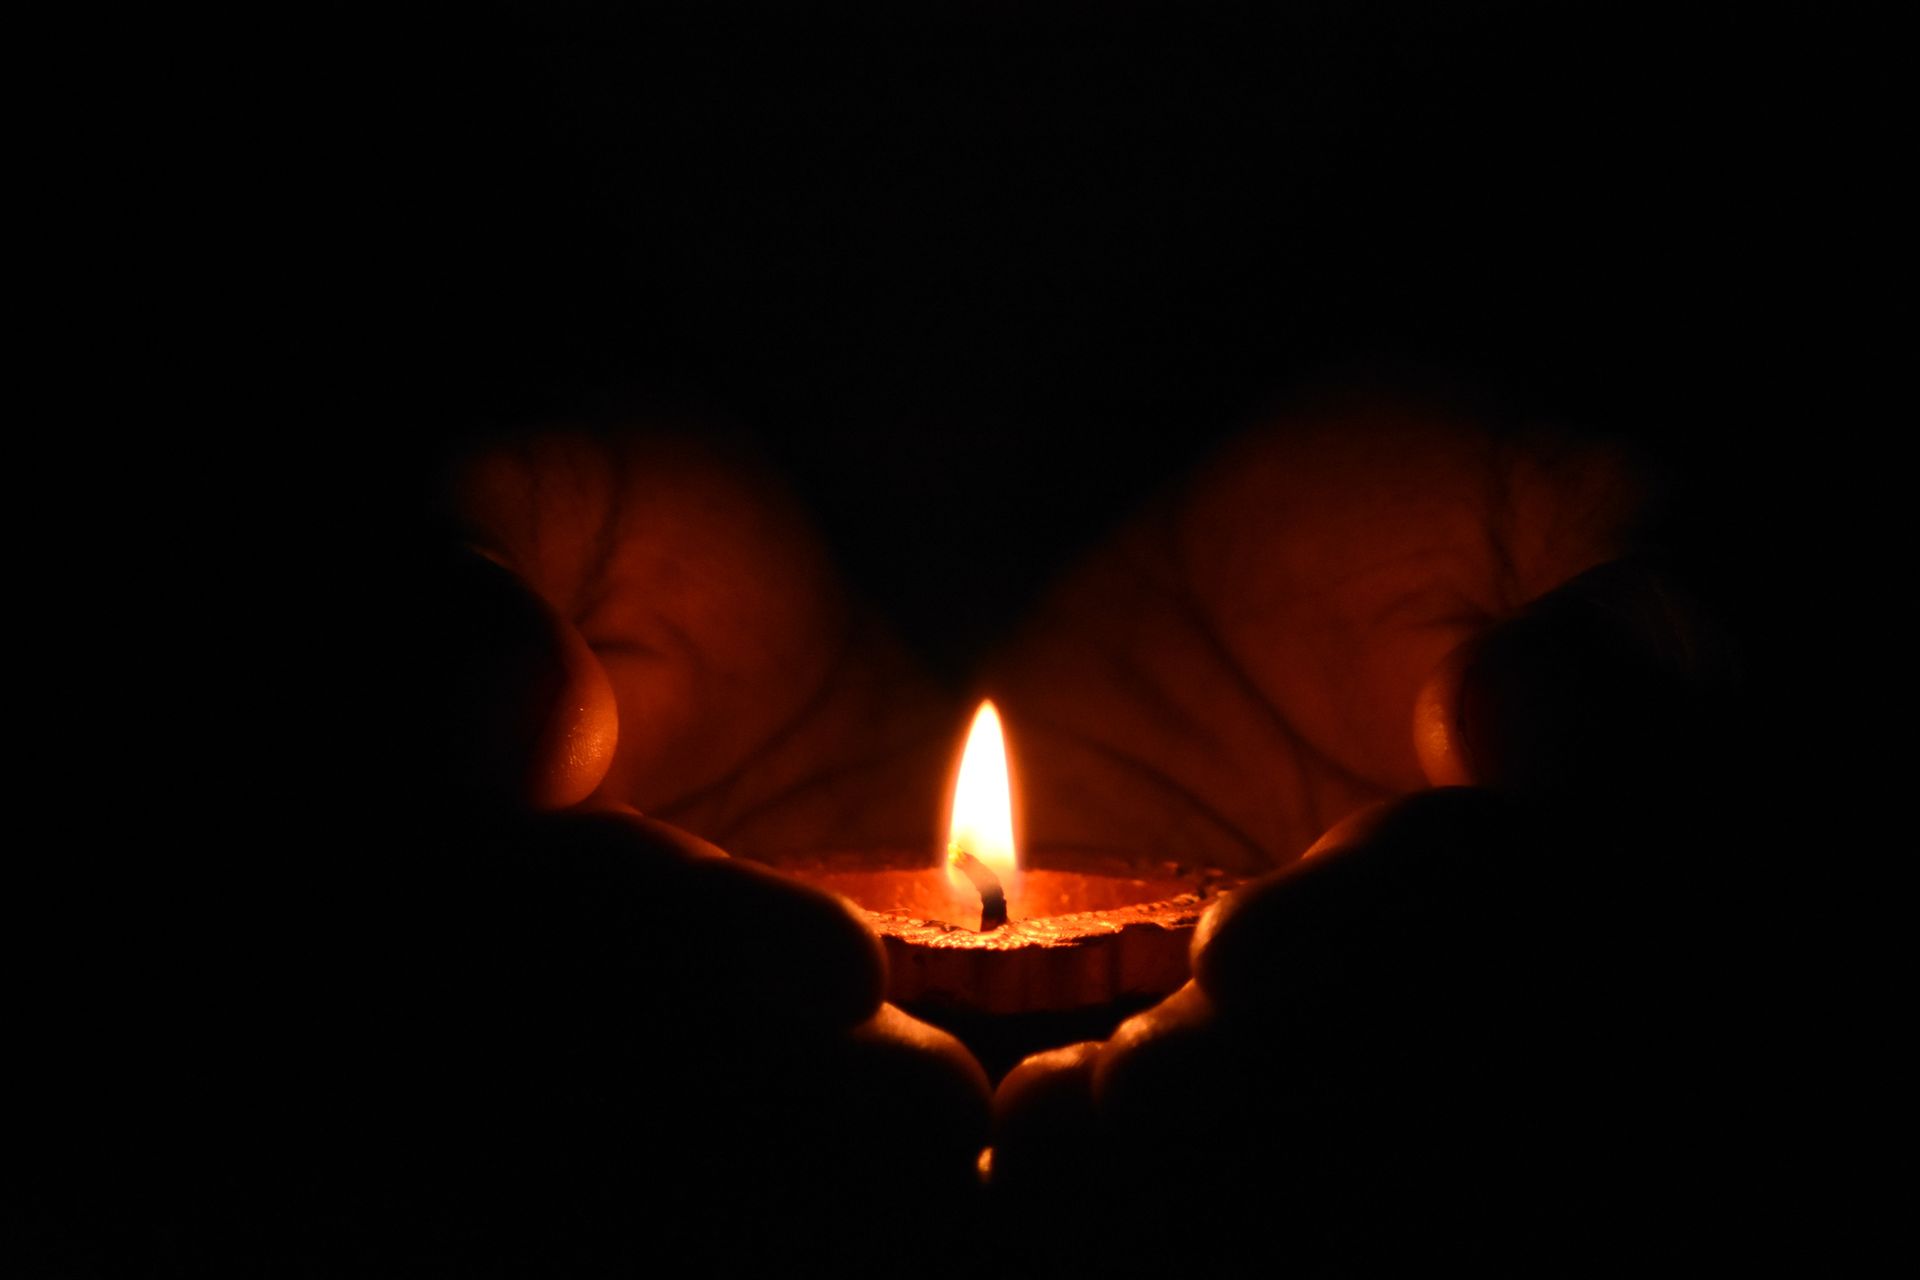 Obrazek przedstawiający świeczkę